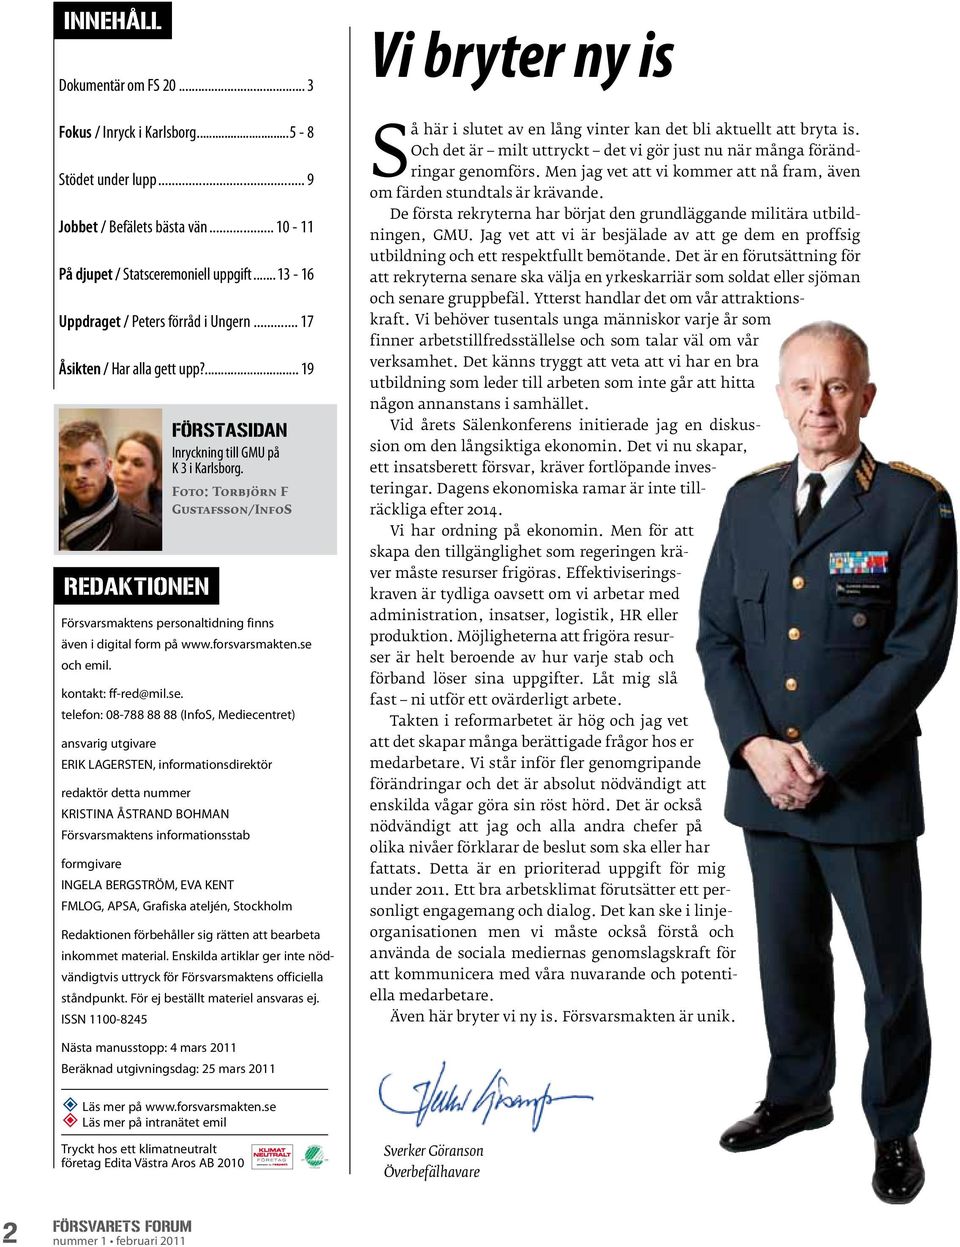 Foto: Torbjörn F Gustafsson/InfoS Försvarsmaktens personaltidning finns även i digital form på www.forsvarsmakten.se 